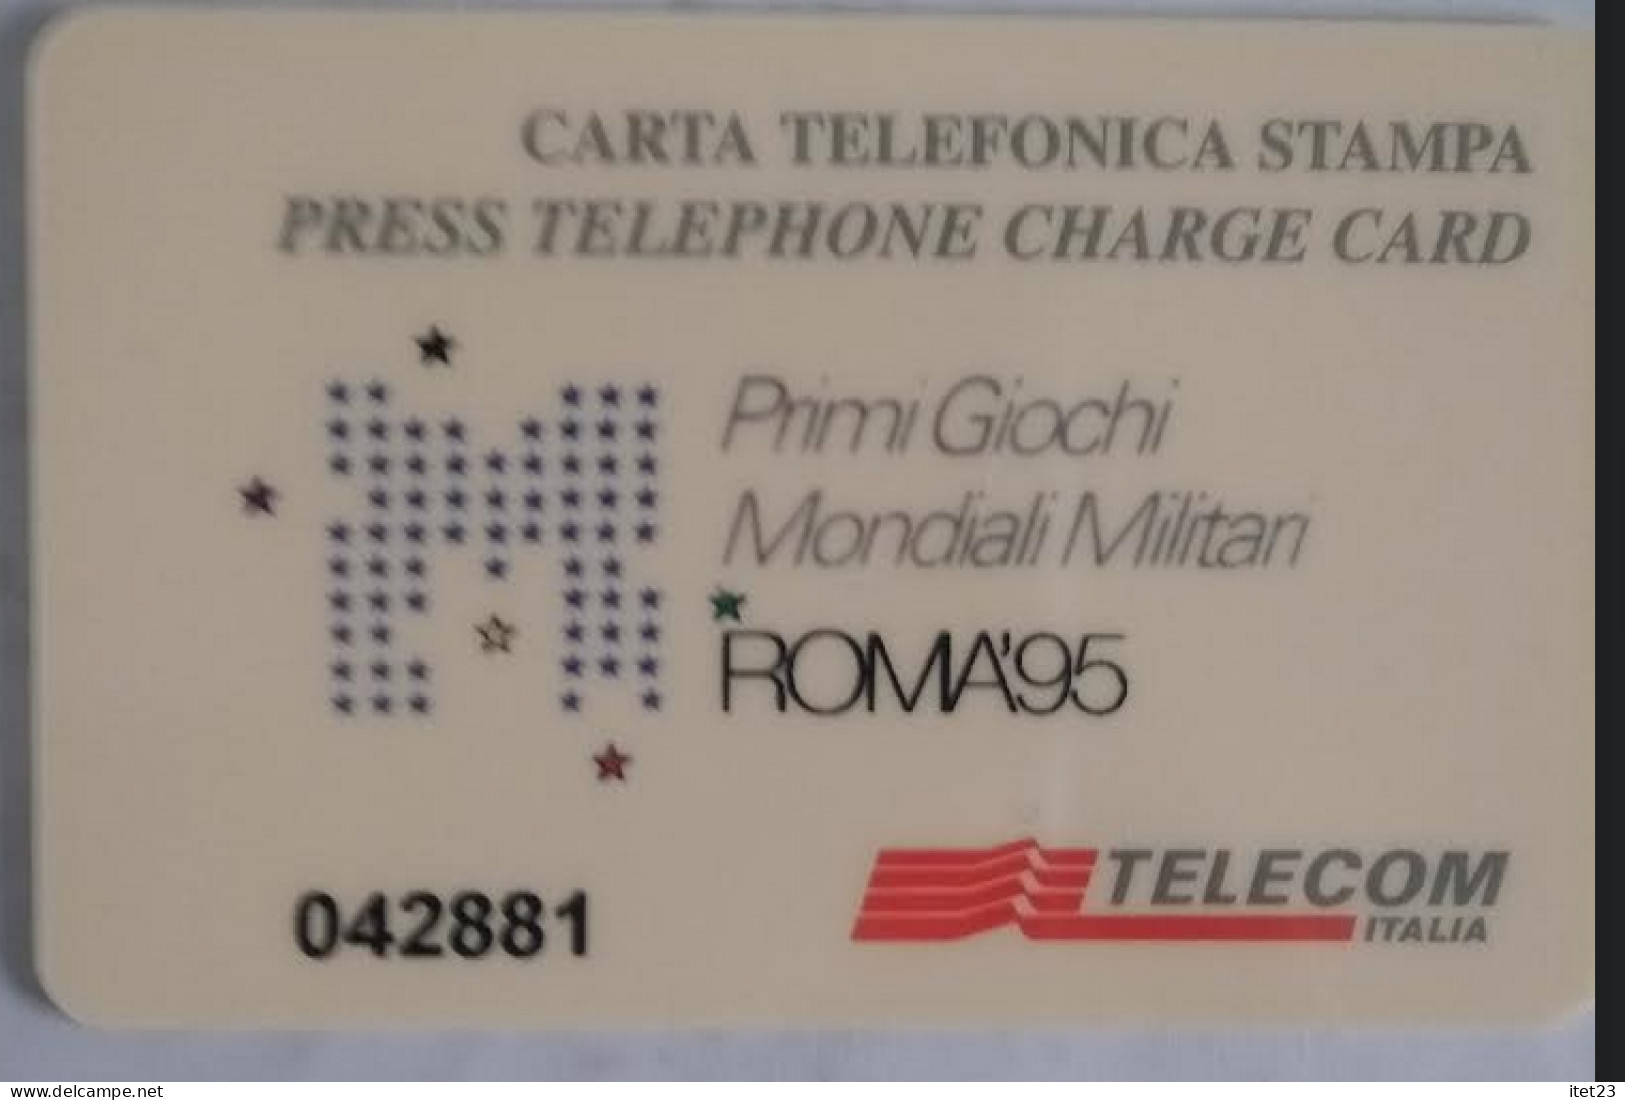 SCHEDA TELEFONICA ITALIANA - USI SPECIALI-STAMPA- ROMA 95- PRIMI GIOCHI MONDIALI MILITARI C&C 4048 - [4] Collections